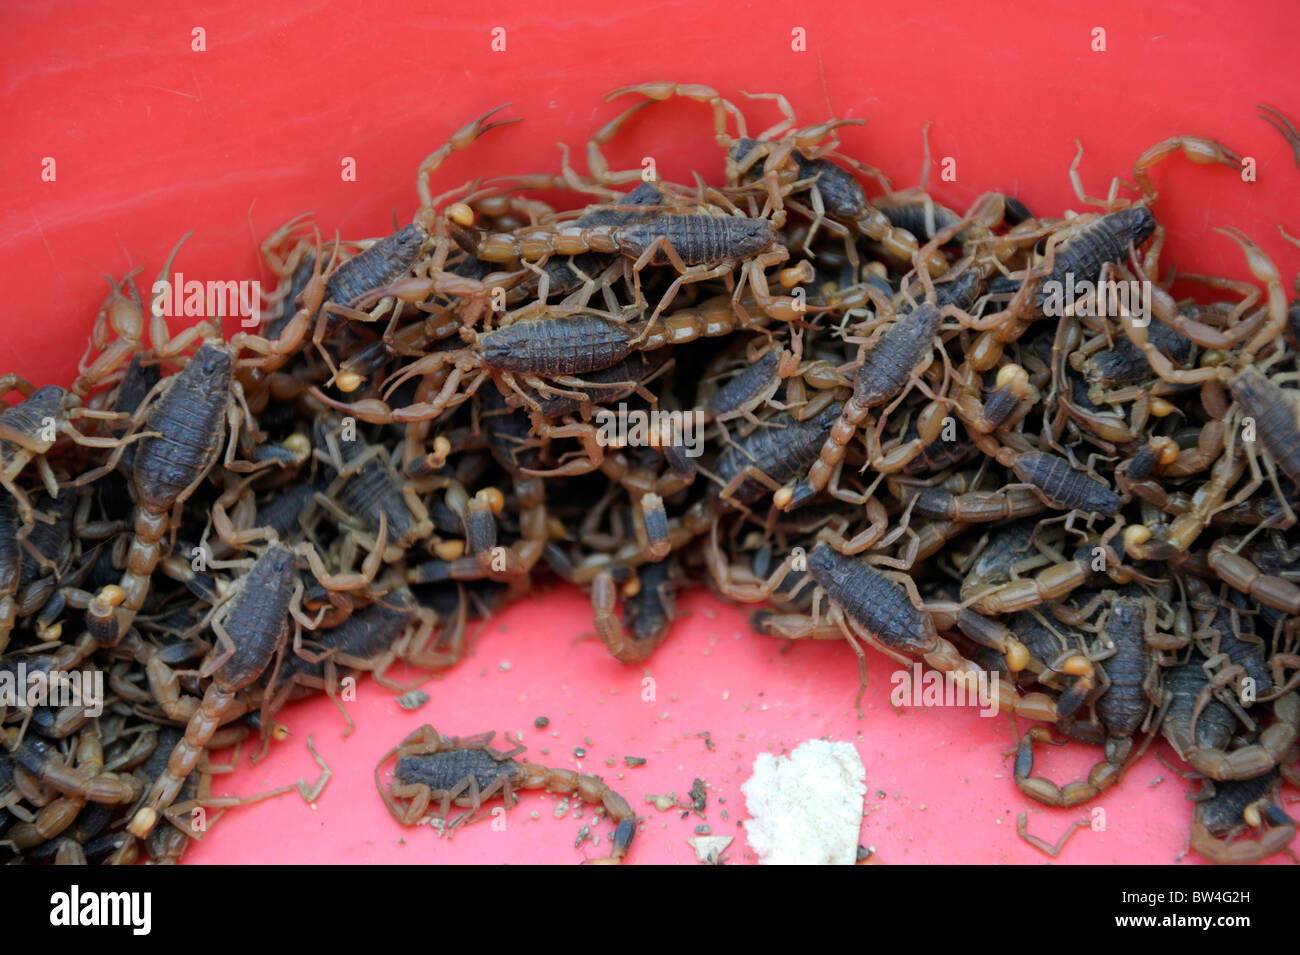 Live scorpioni sono in vendita in un mercato a Qingdao, provincia di Shandong, Cina. Foto Stock